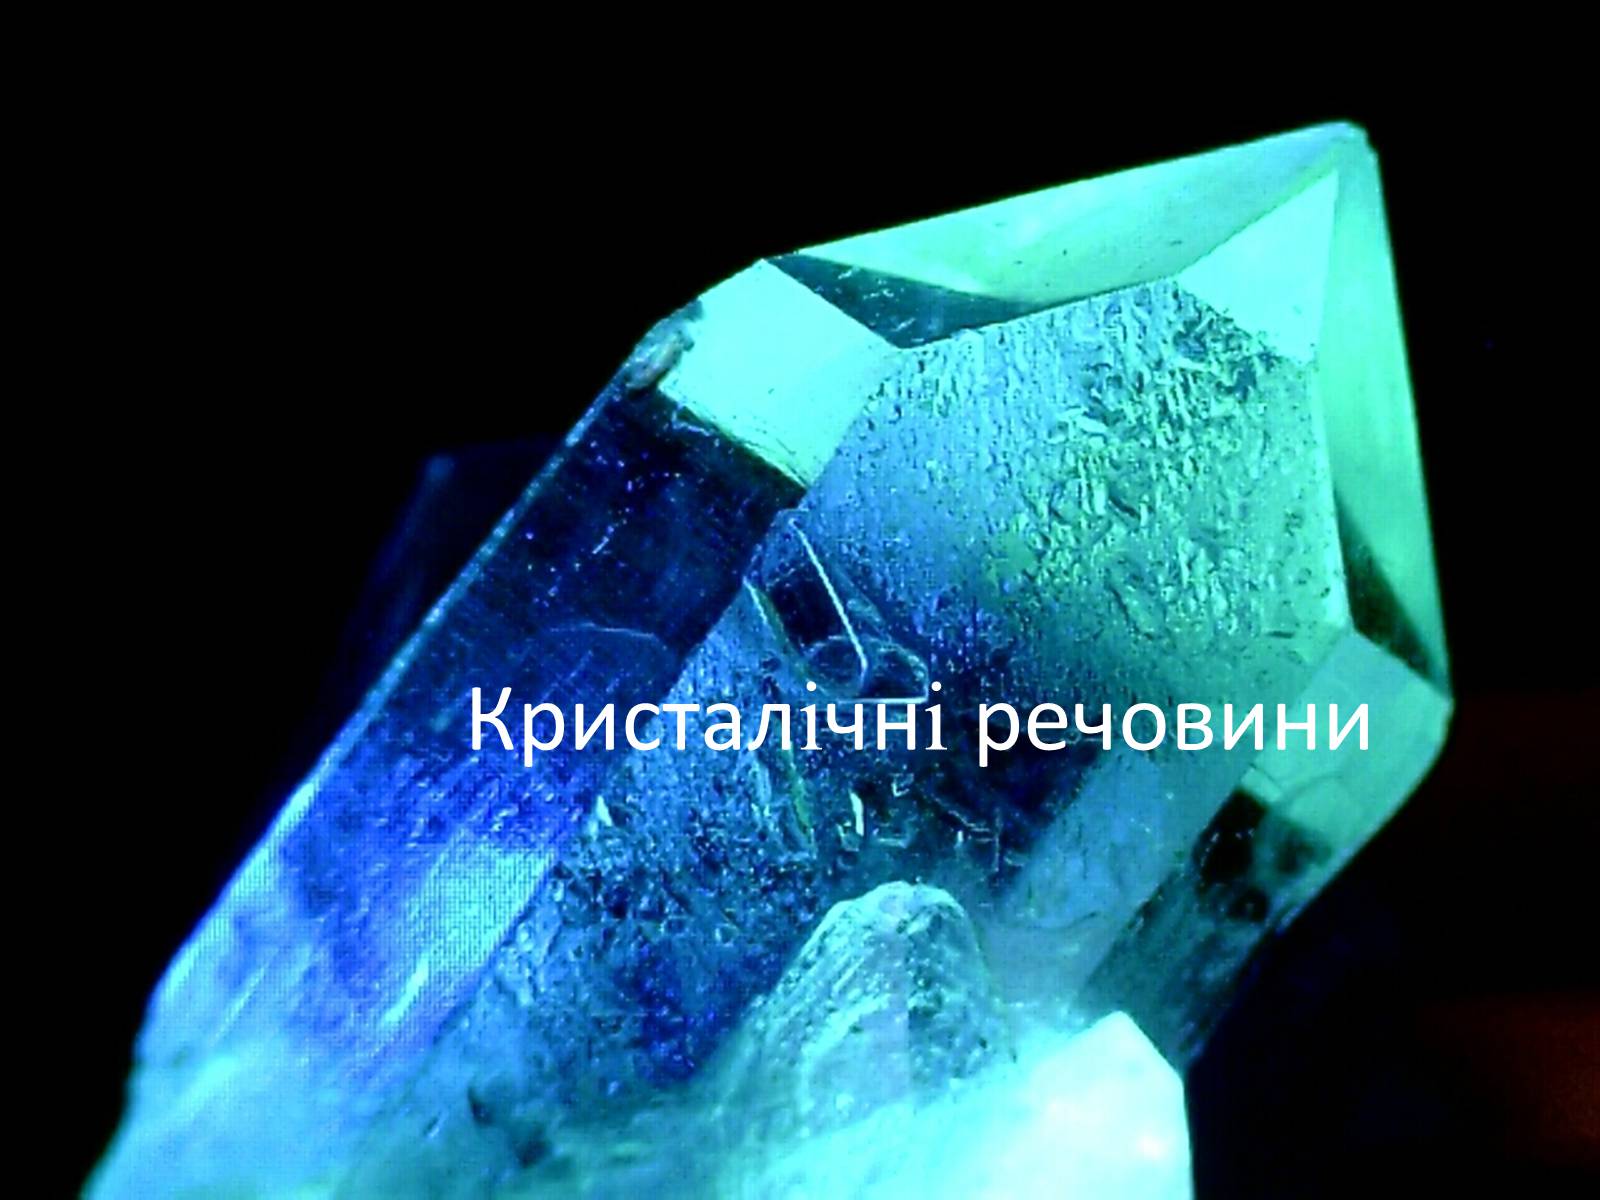 Good crystal